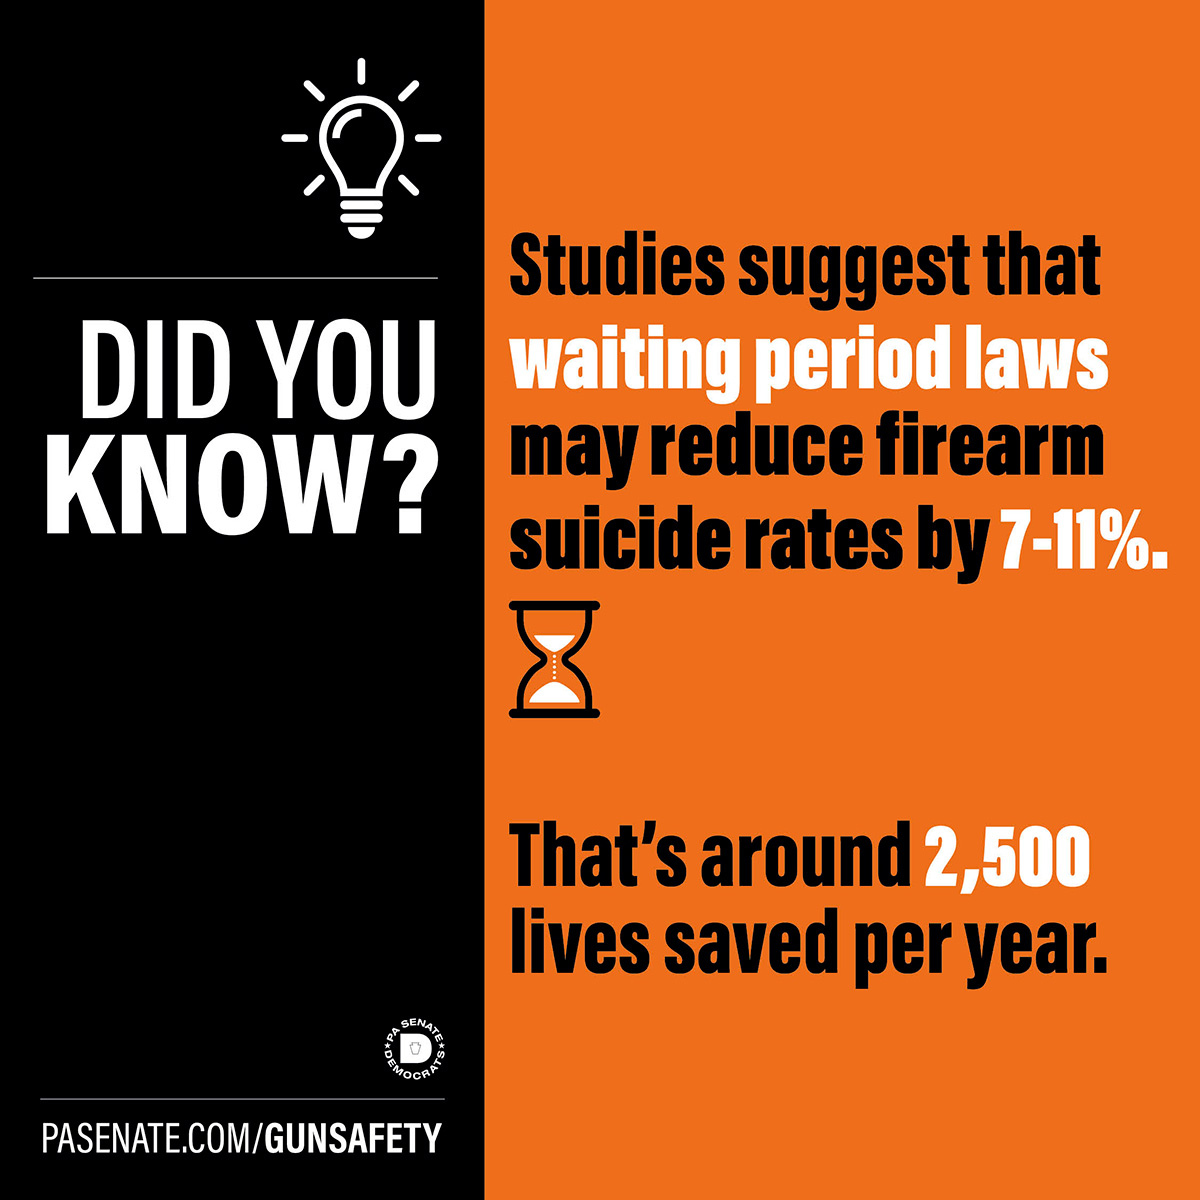 알고 계셨나요? 연구에 따르면 대기 기간 법이 총기 자살률을 7~11%까지 낮출 수 있다고 합니다.